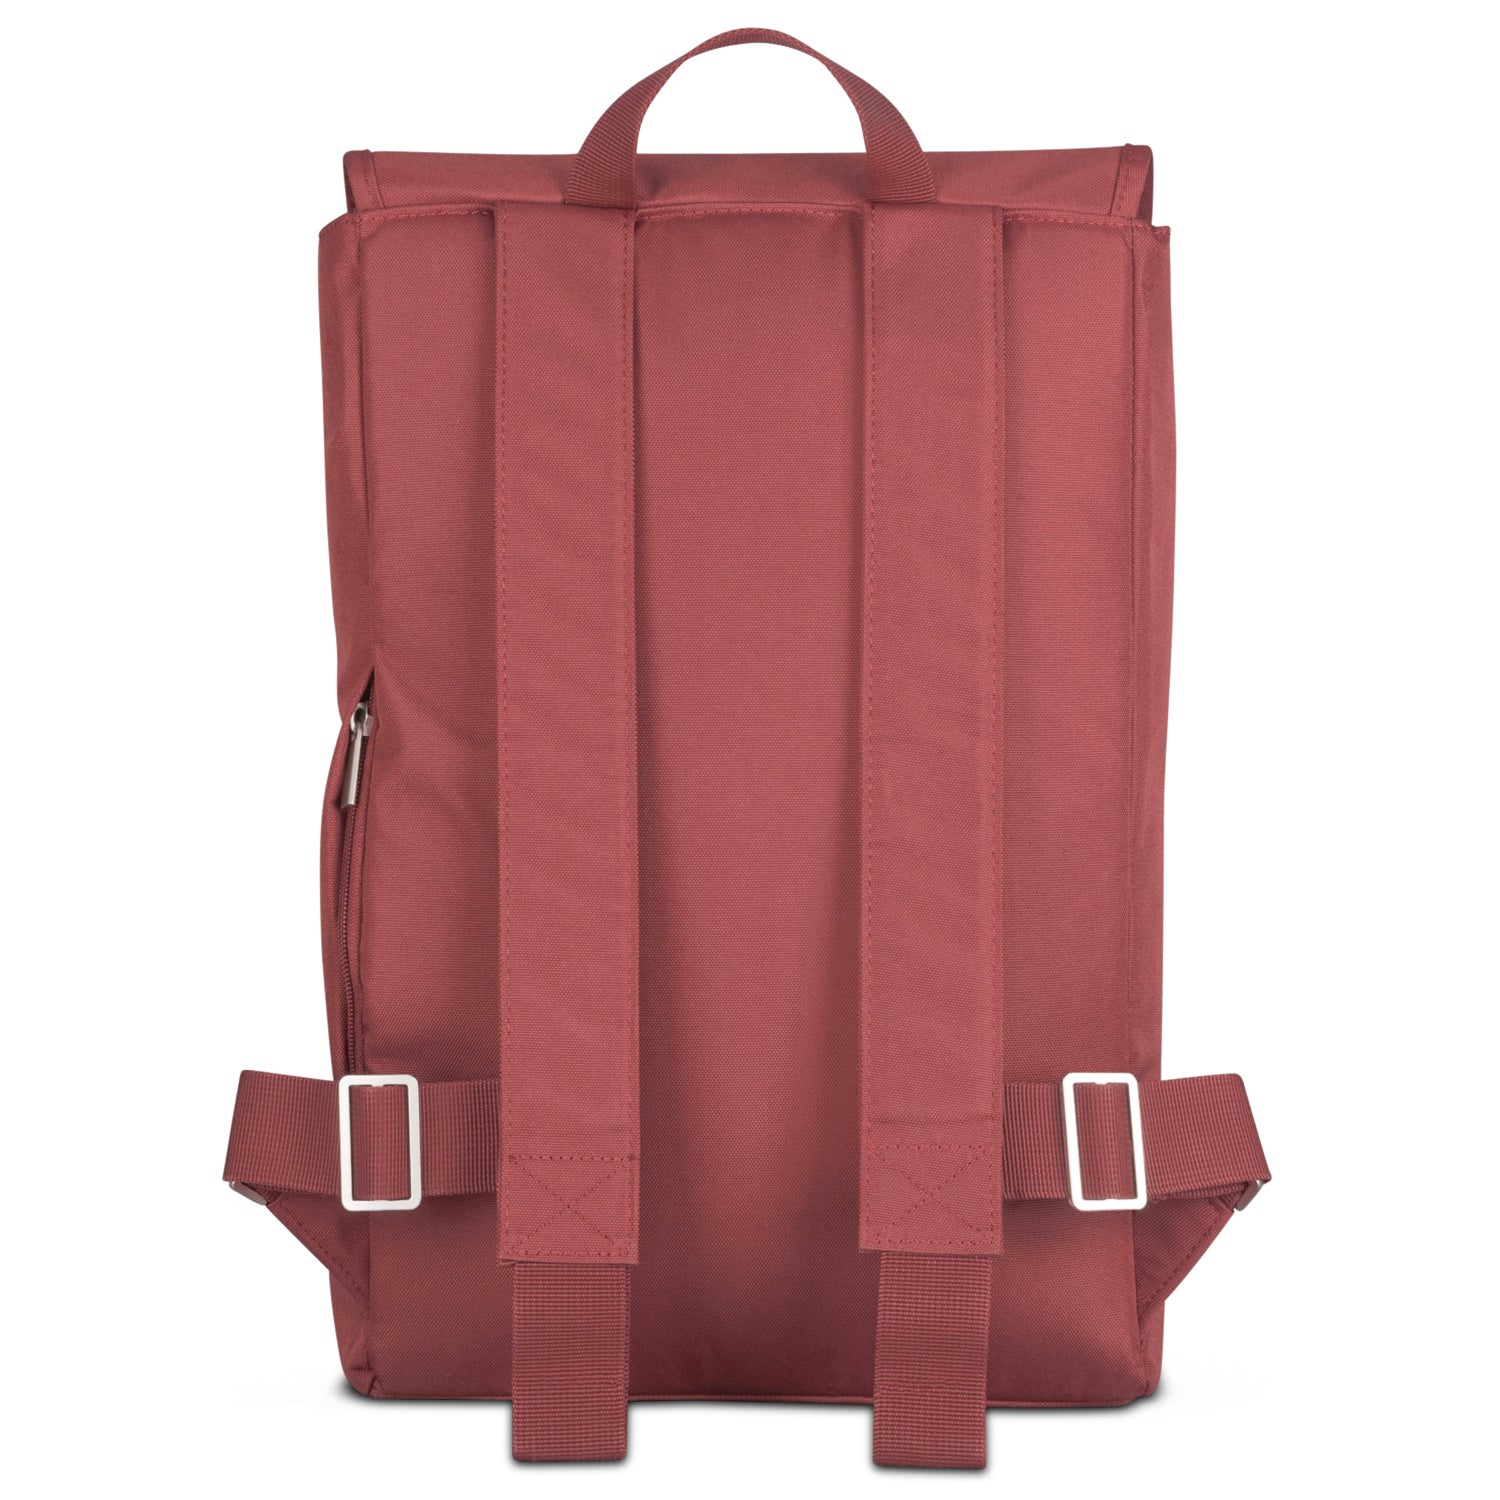 Moderner Rucksack für Freizeit, Uni und Reisen